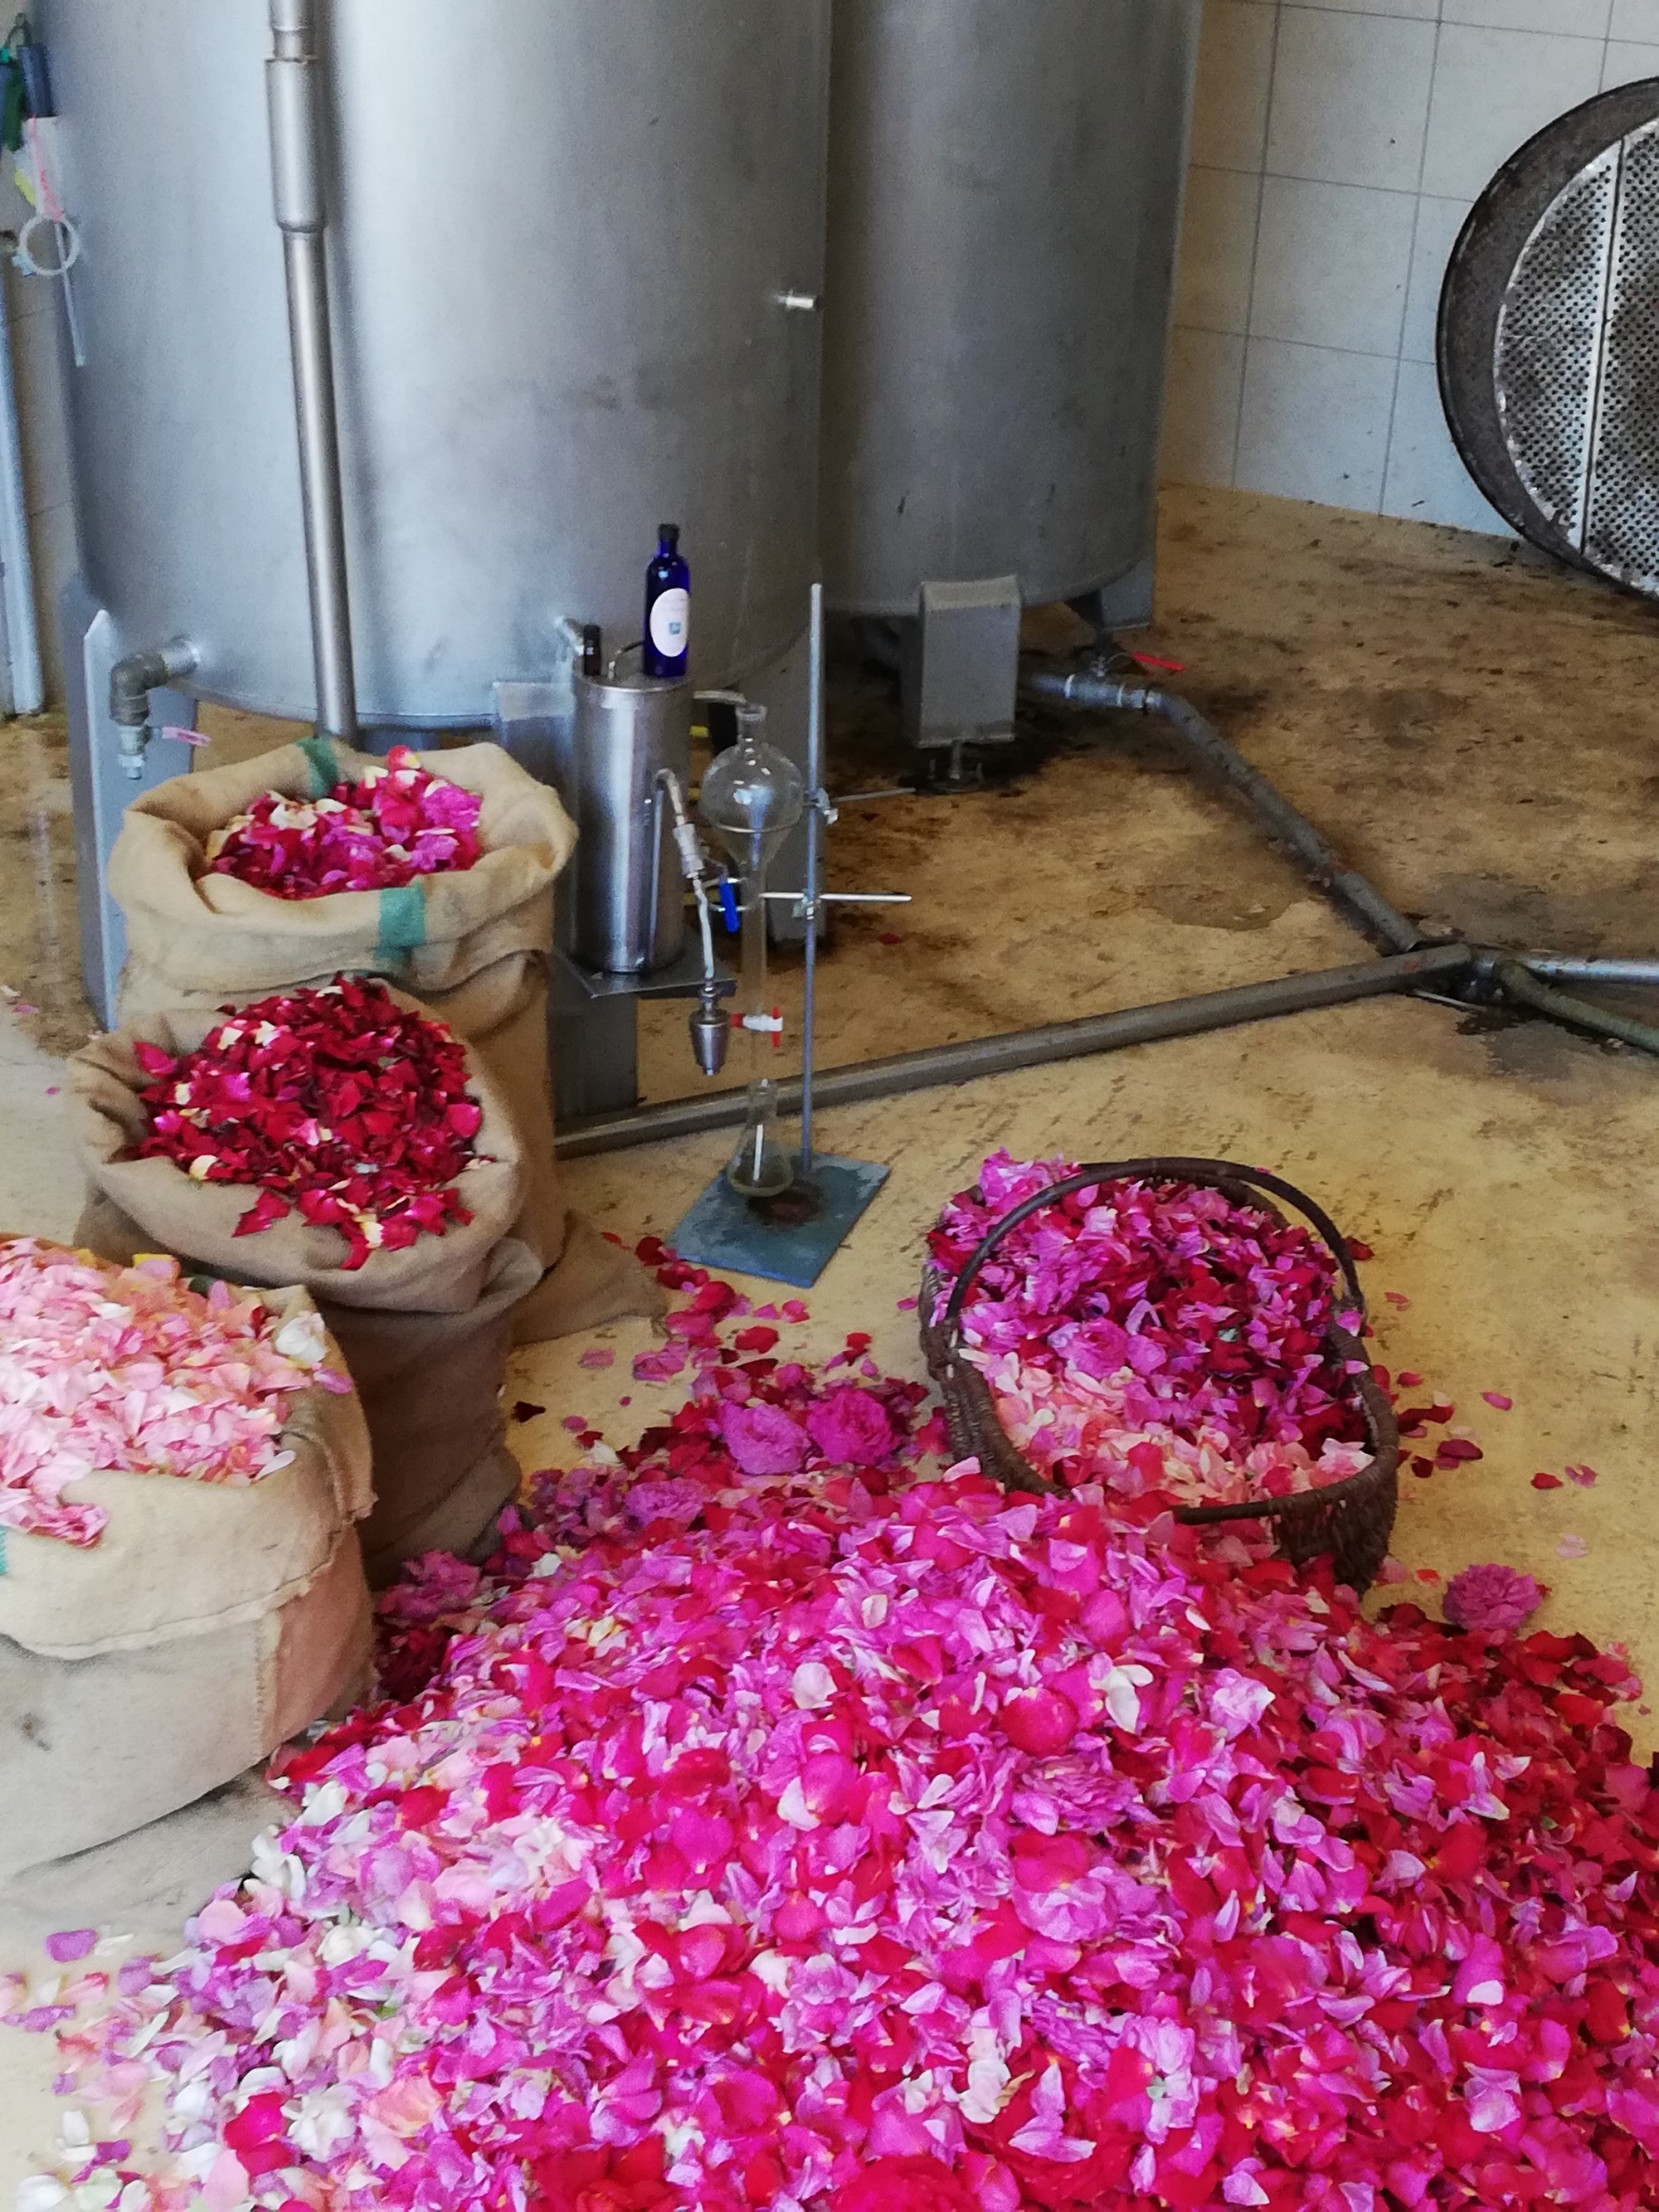 The rose petals of DouÃ©-la-Fontaine